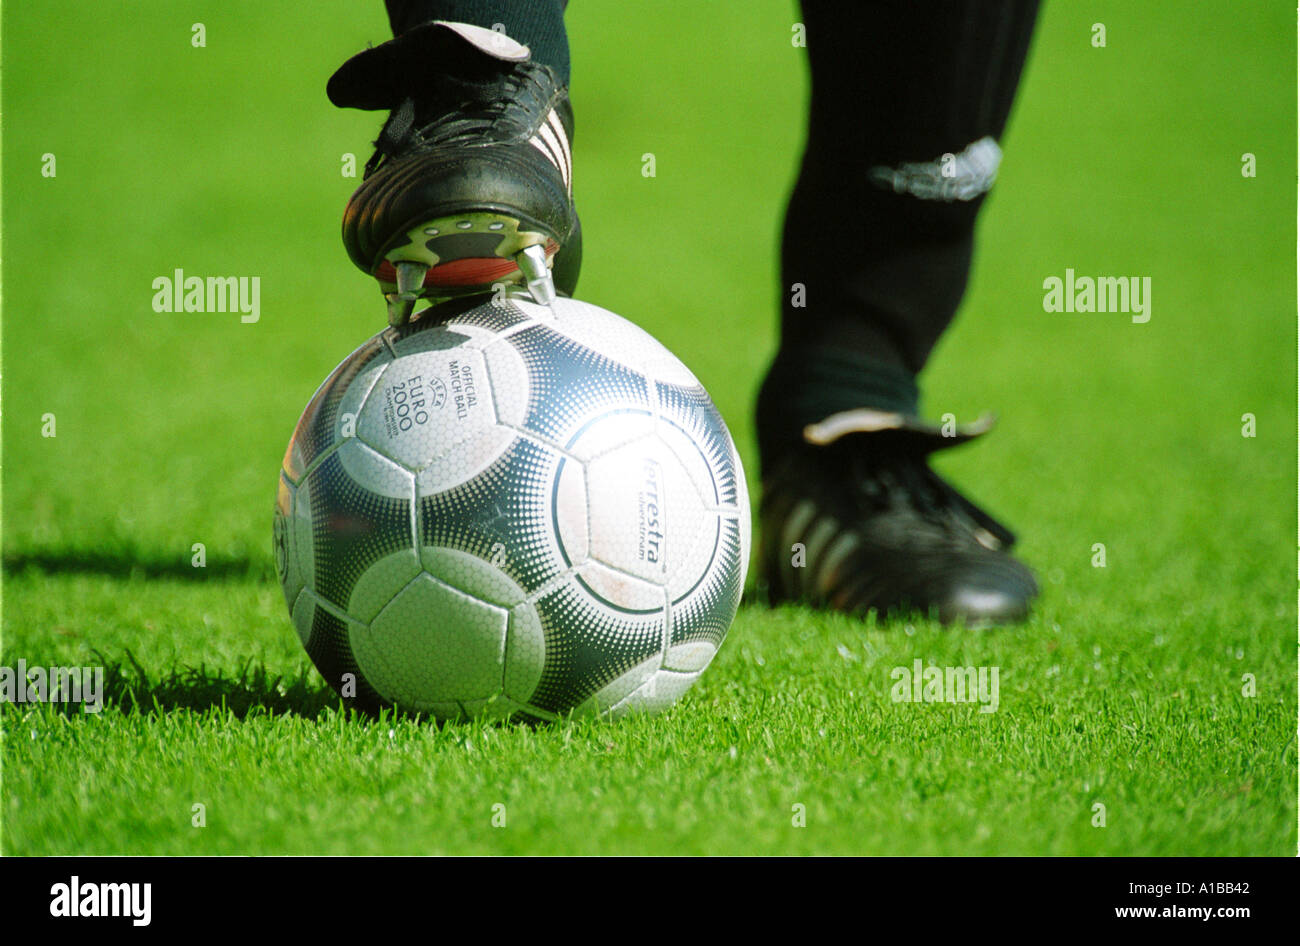 Fußball Spieler s Fuß auf einem Fußball Stockfoto